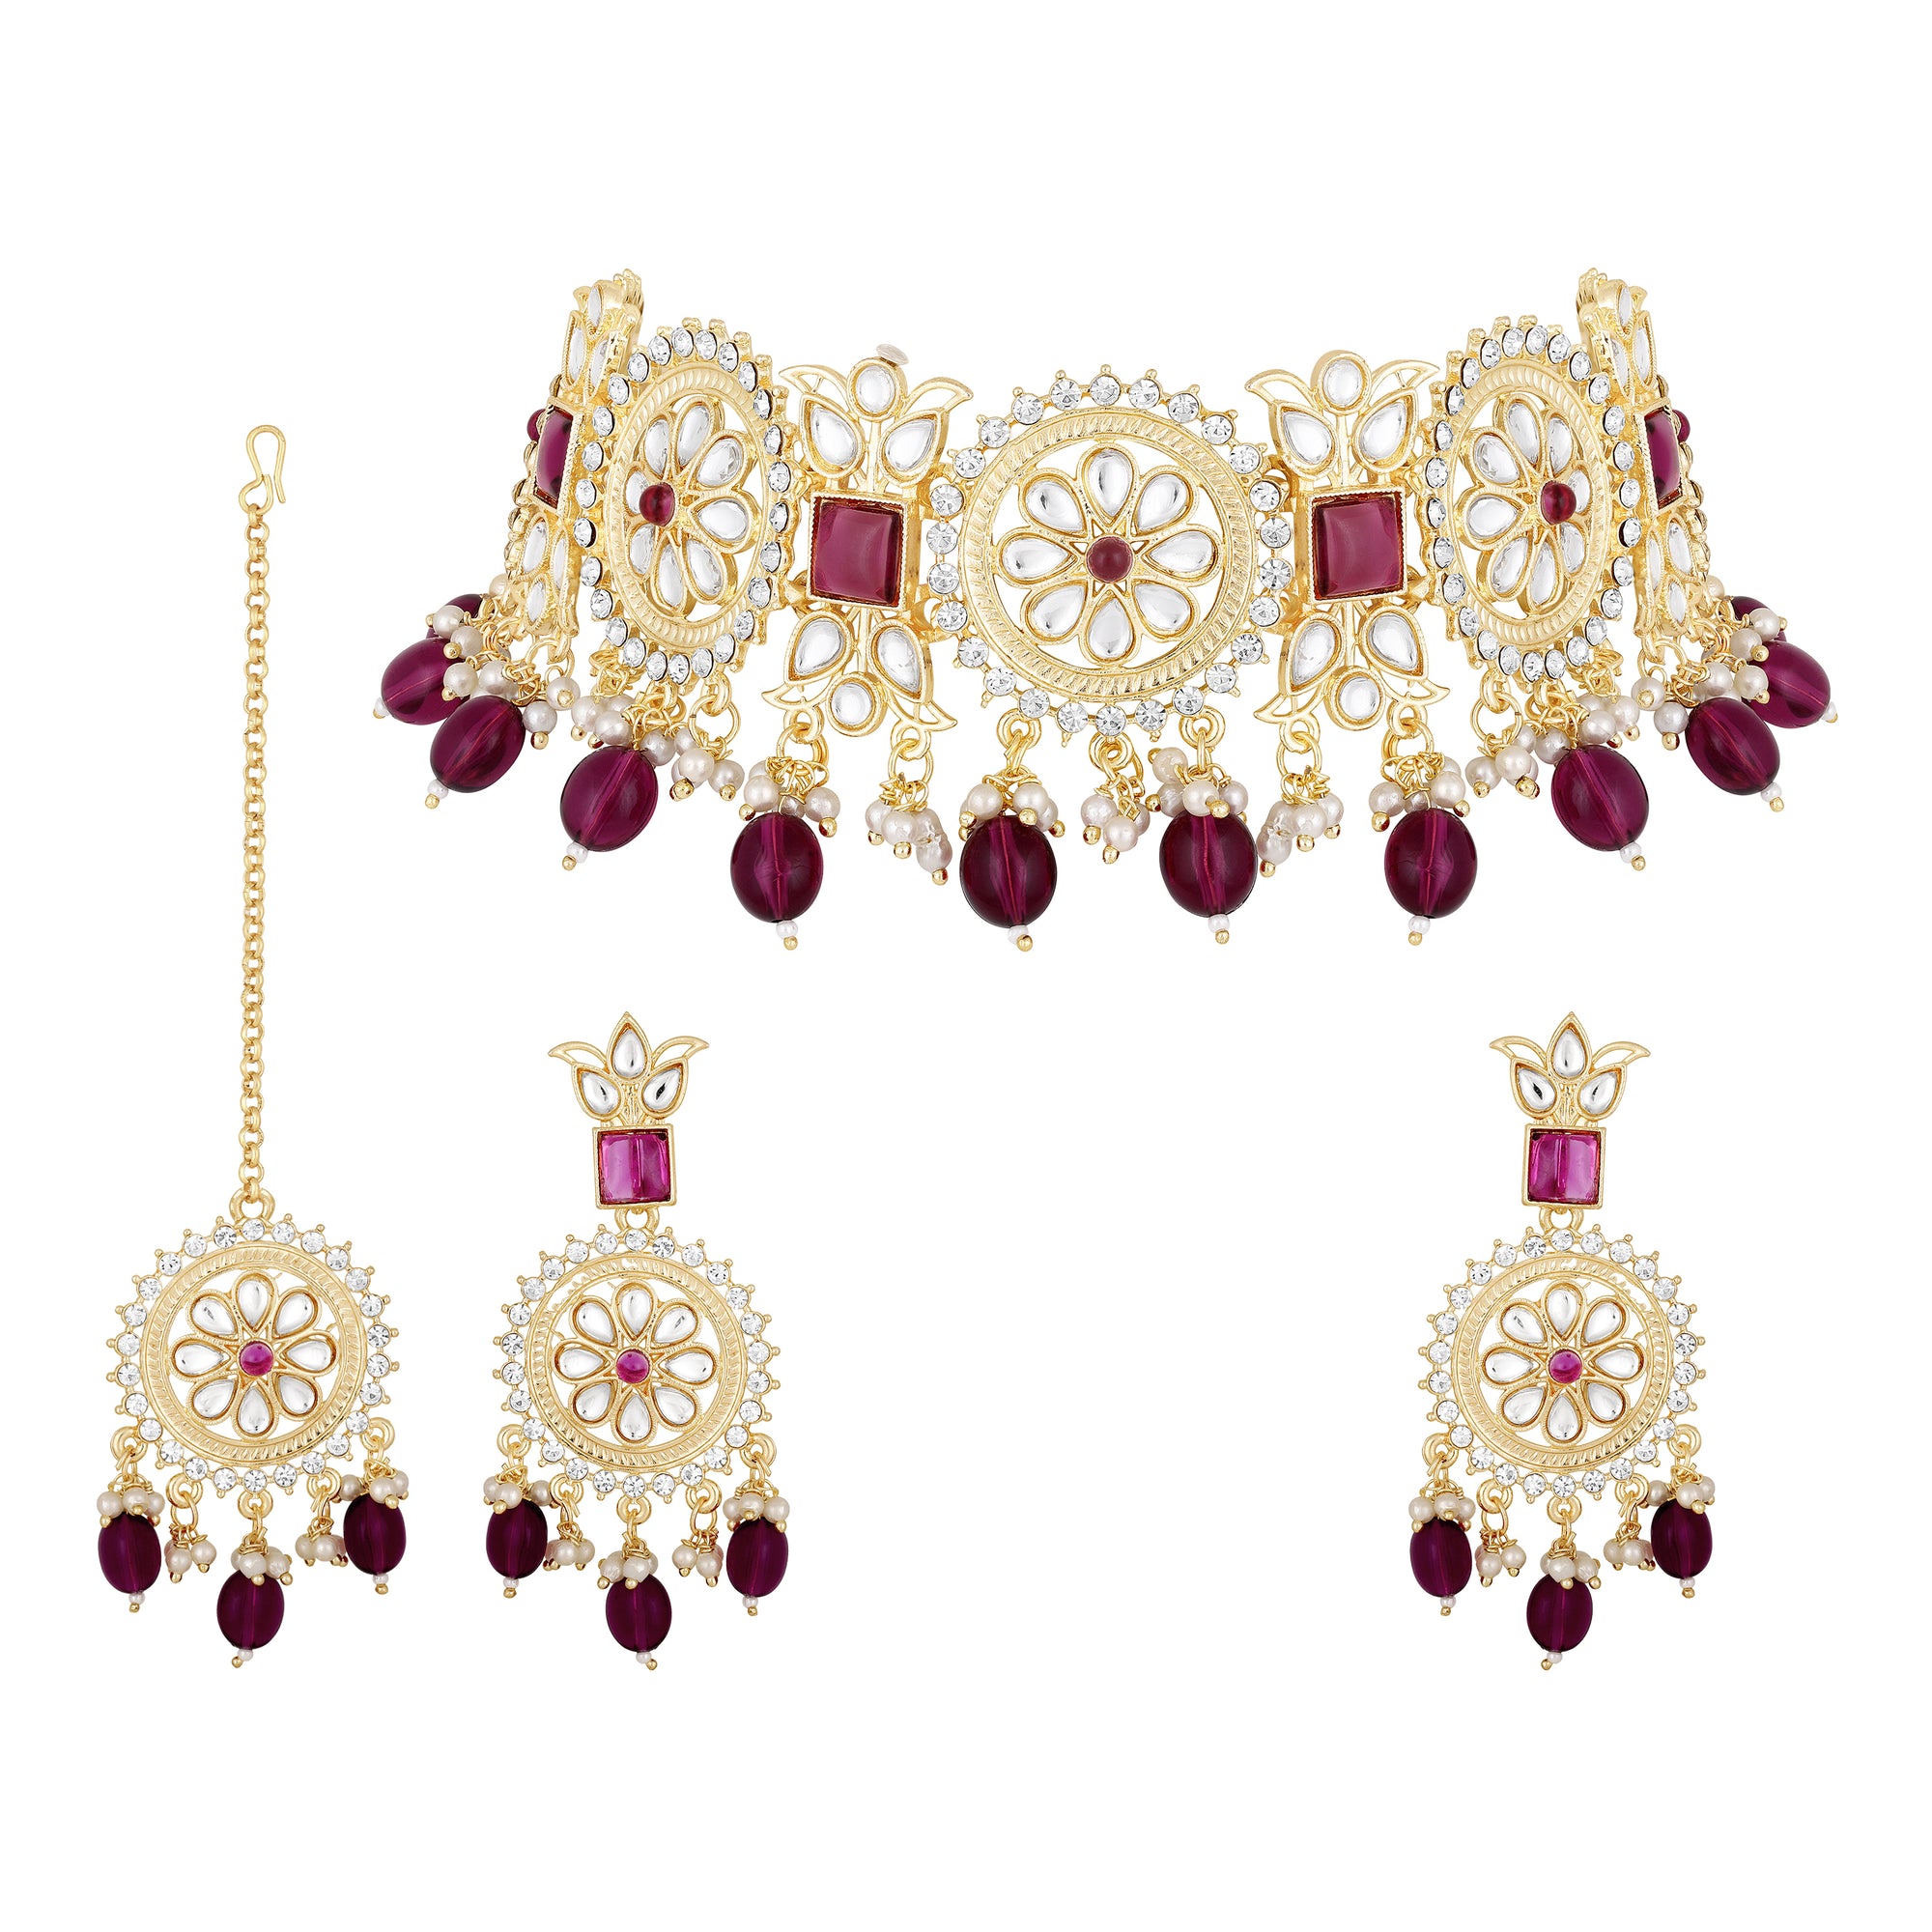 Aritficial Pearl and Kundan Floral Chokar Jewellery Set